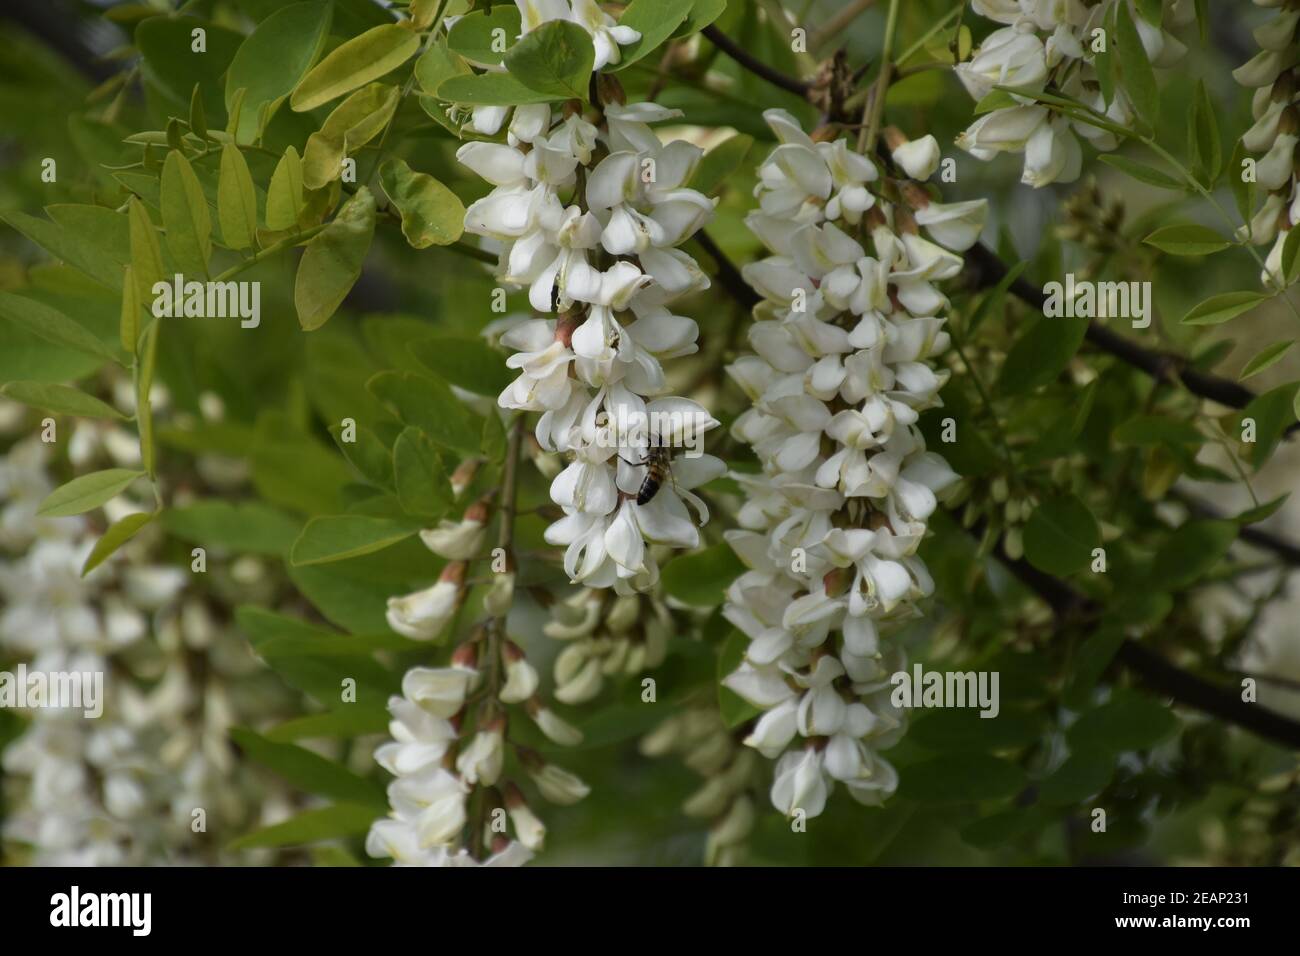 Flowering acacia white grapes Stock Photo